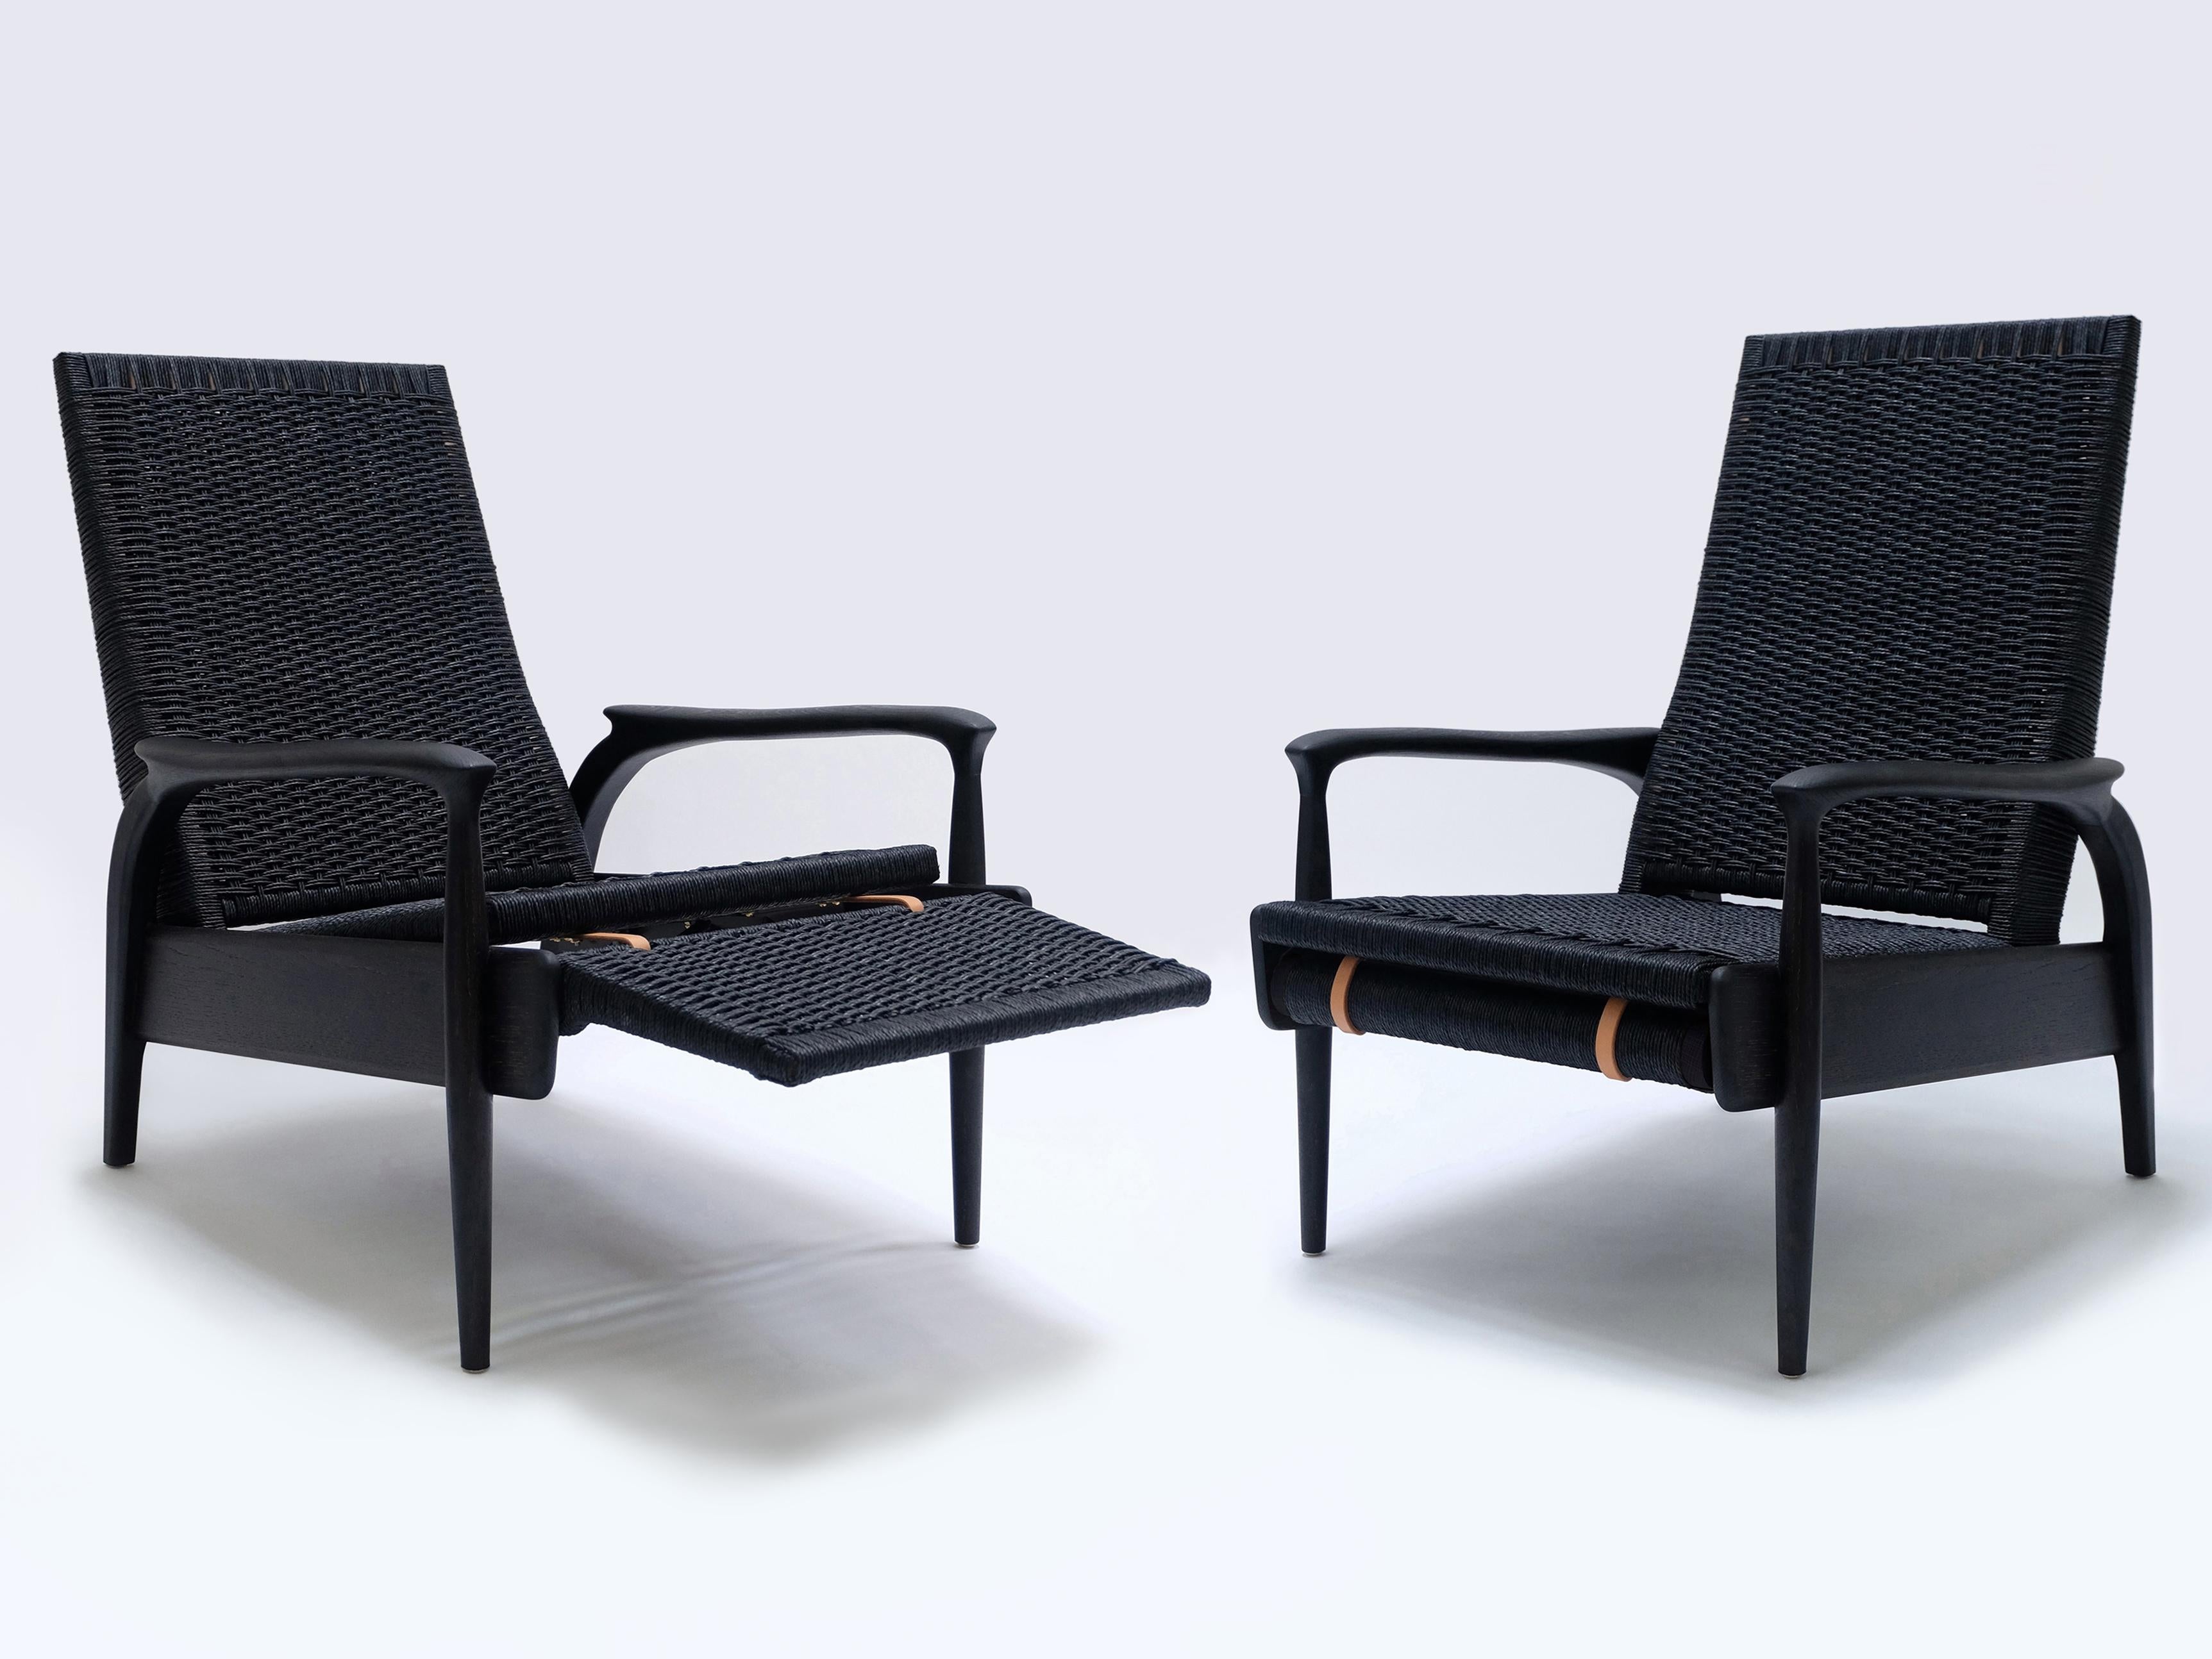 Ein Paar handgefertigte Eco-Lounge-Sessel FENDRIK von Studio180degree
Abgebildet in nachhaltiger, massiver, naturgeschwärzter Eiche und original schwarzer dänischer Kordel

Edel - taktil - raffiniert - nachhaltig
Reclining Eco Lounge Chair FENDRIK